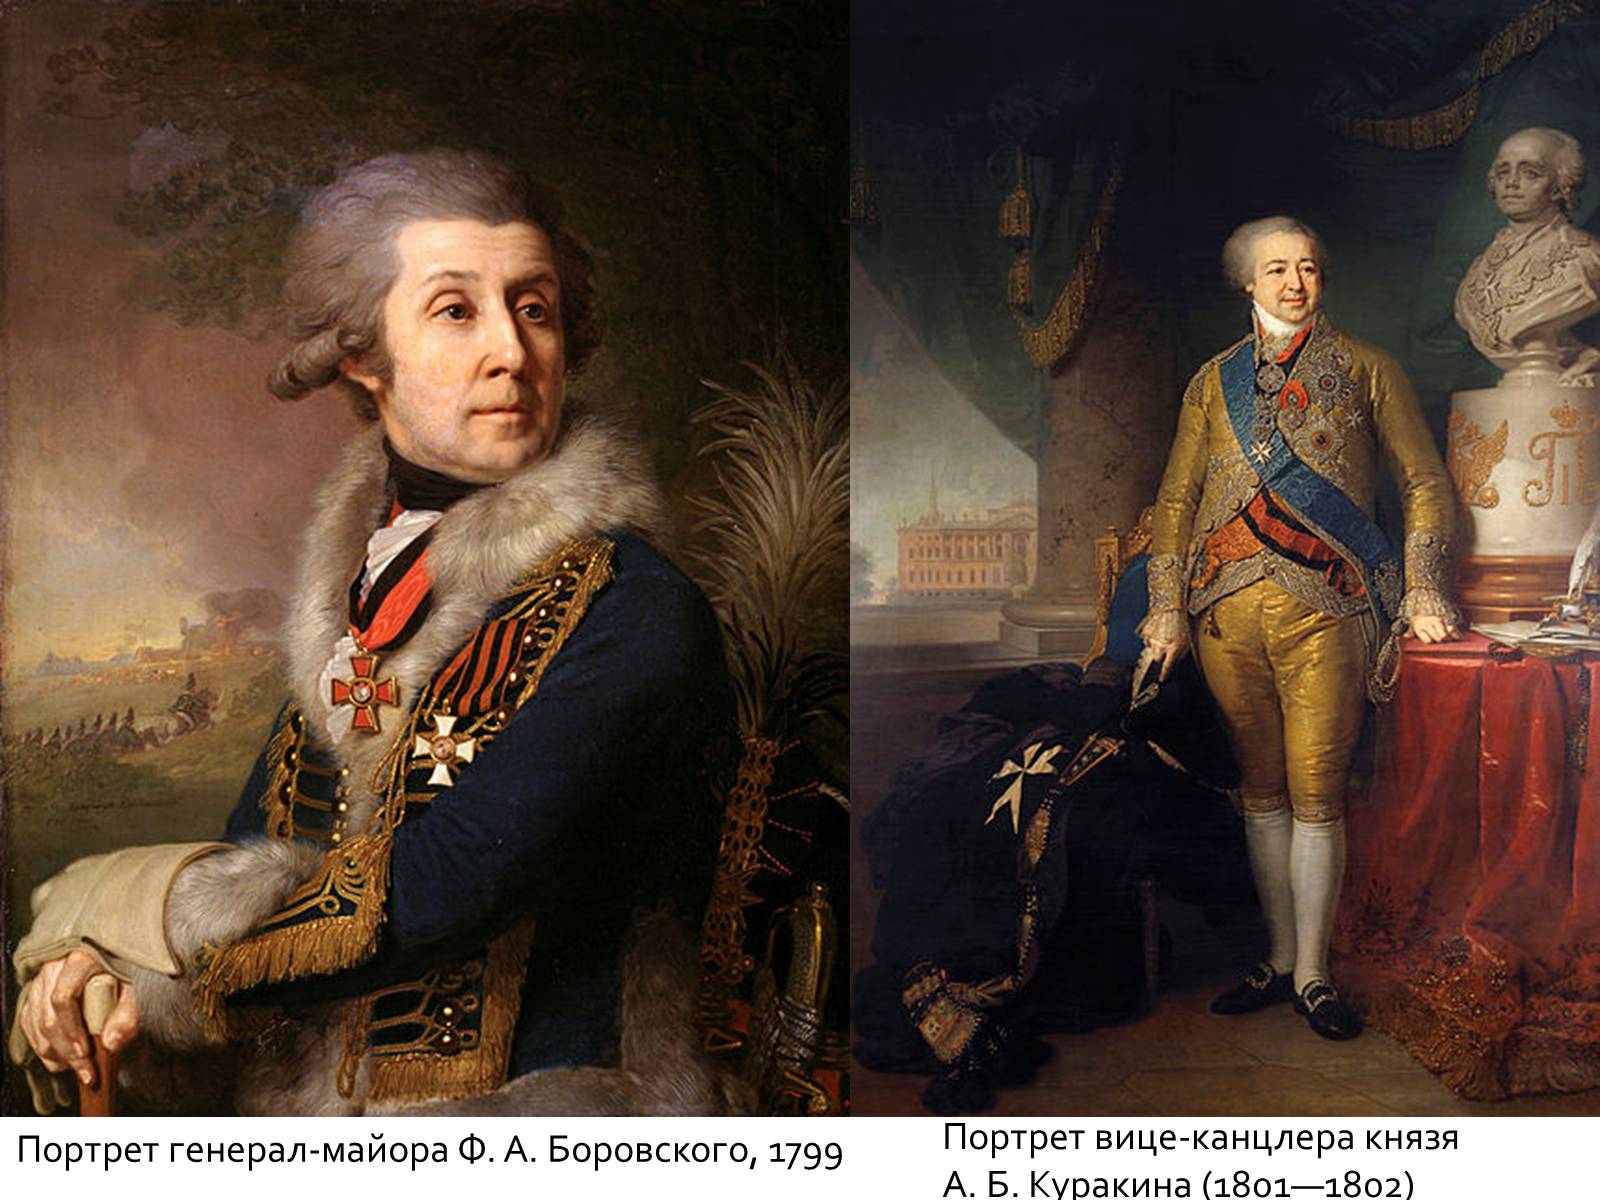 «Портрет князя а. б. Куракина, вице-канцлера» (1801—1802)